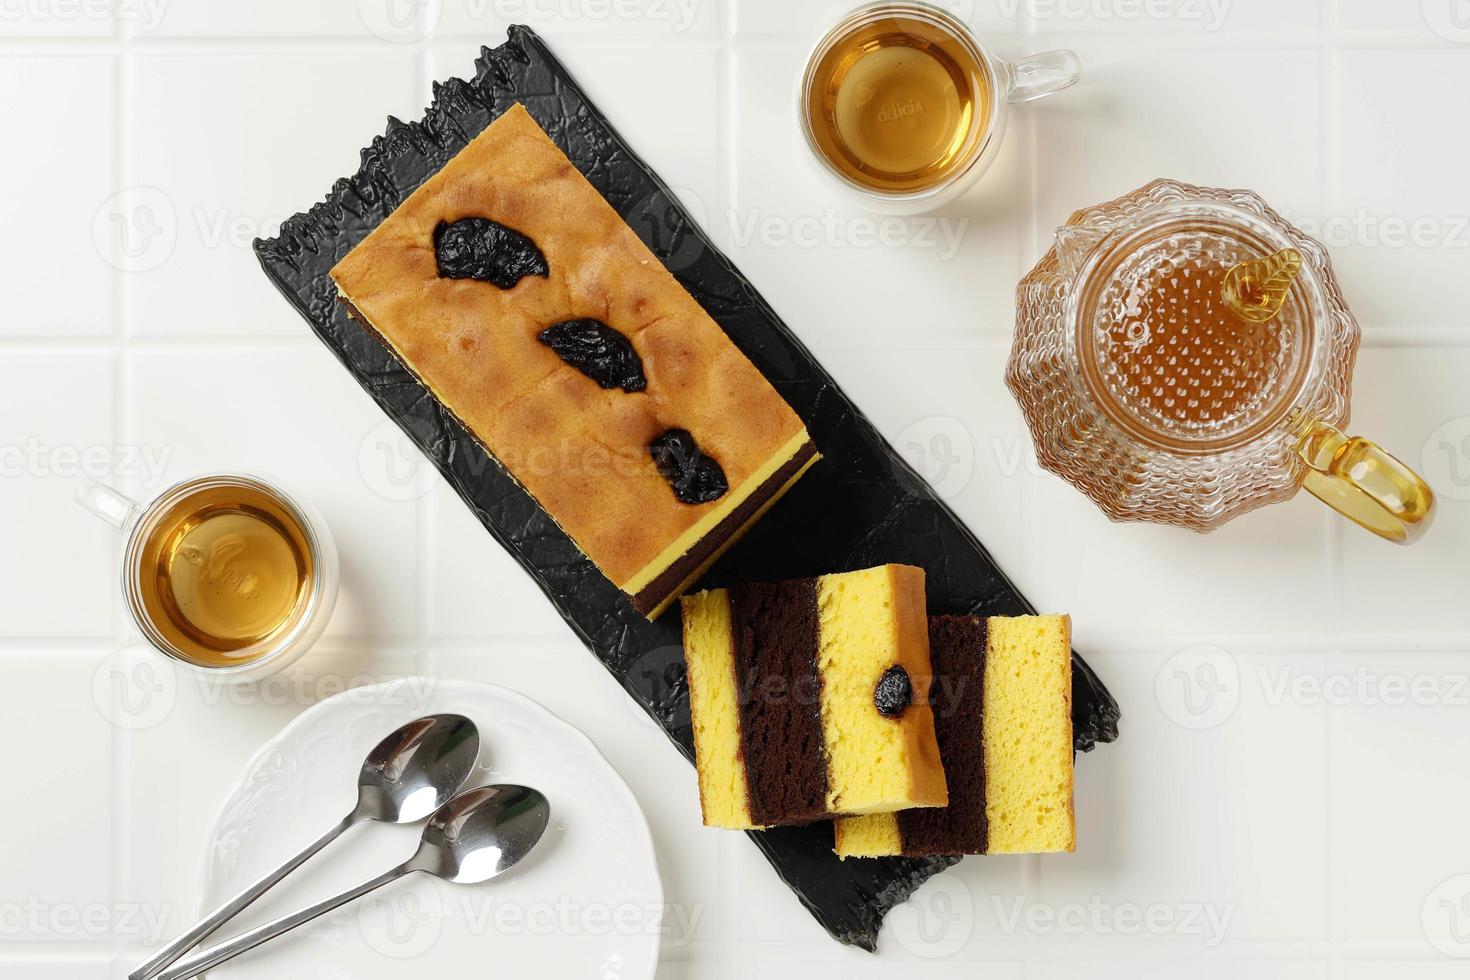 lapis surabaya ou surabaya layer cake est une génoise riche en jaune d'oeuf à trois couches avec de la confiture de fraises entre les deux photo